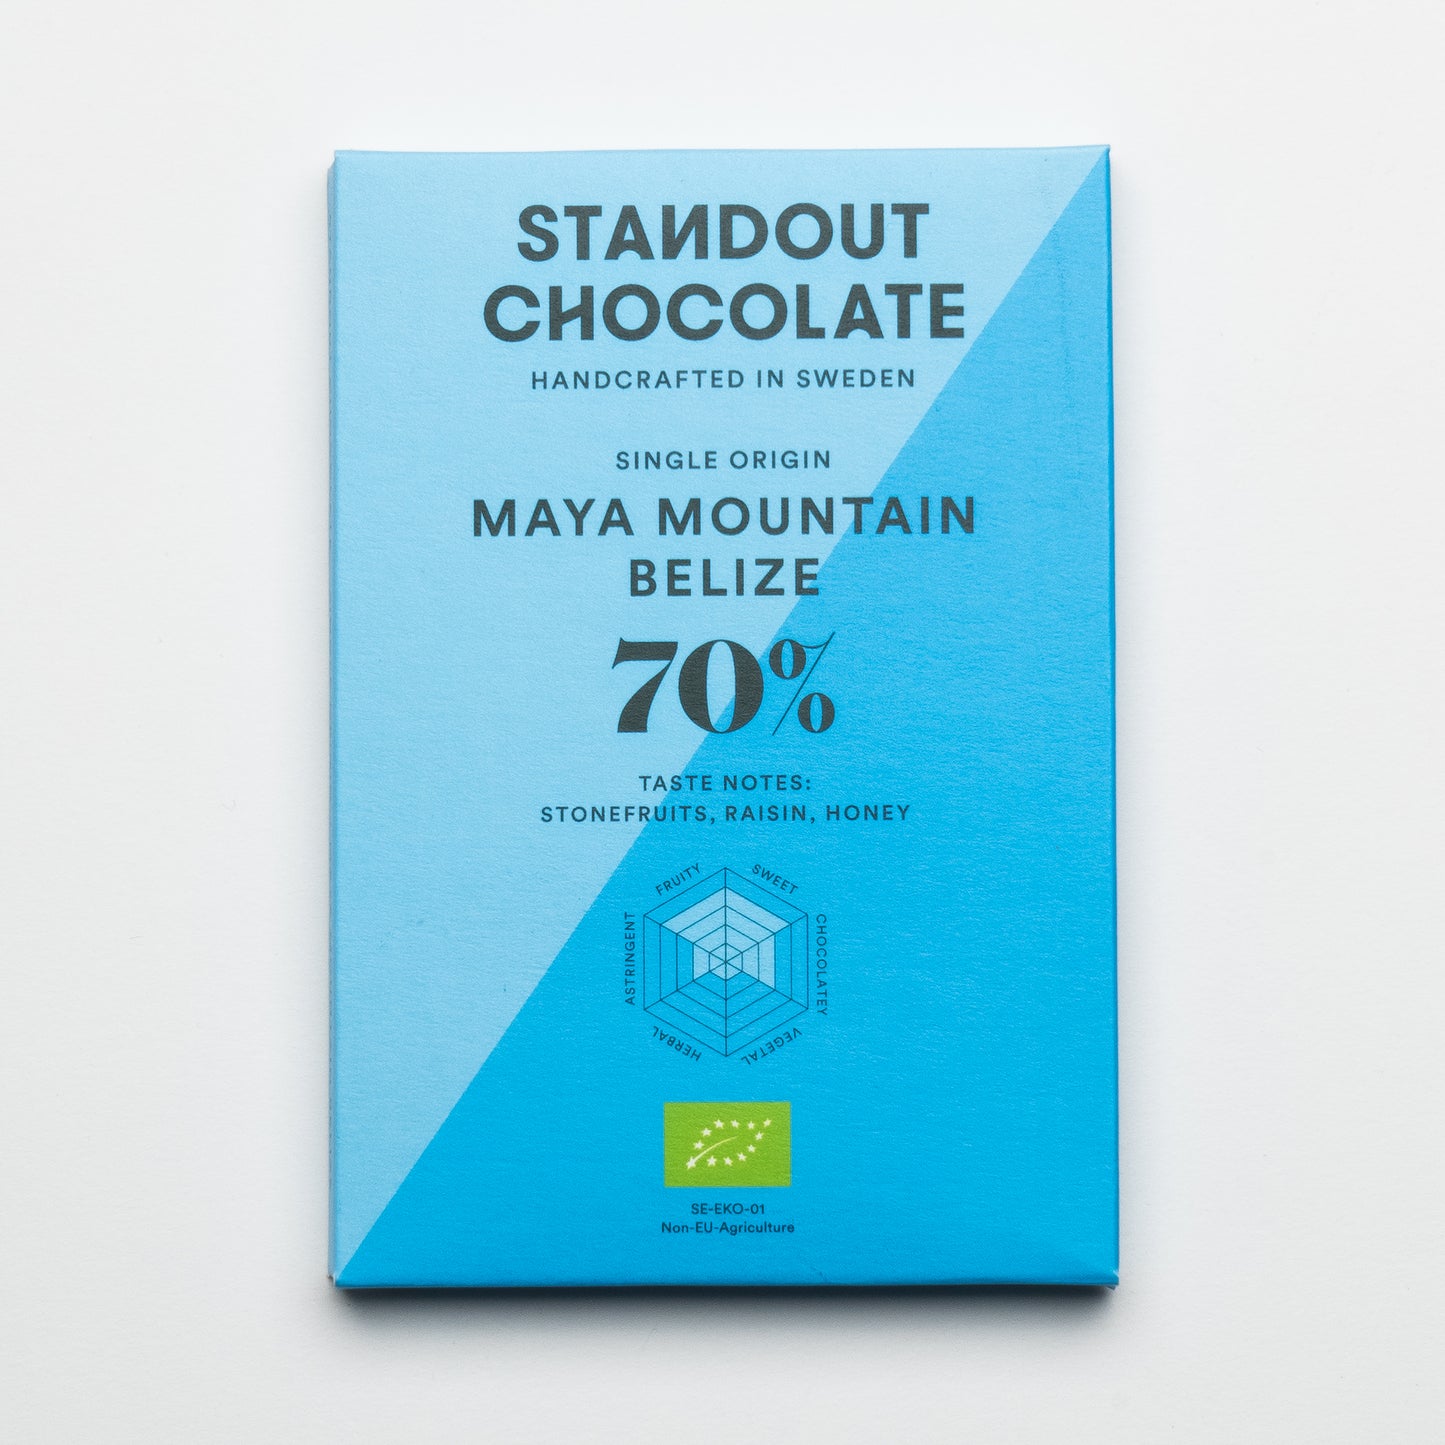 Standout Chocolate Belize Maya Mountain 70%